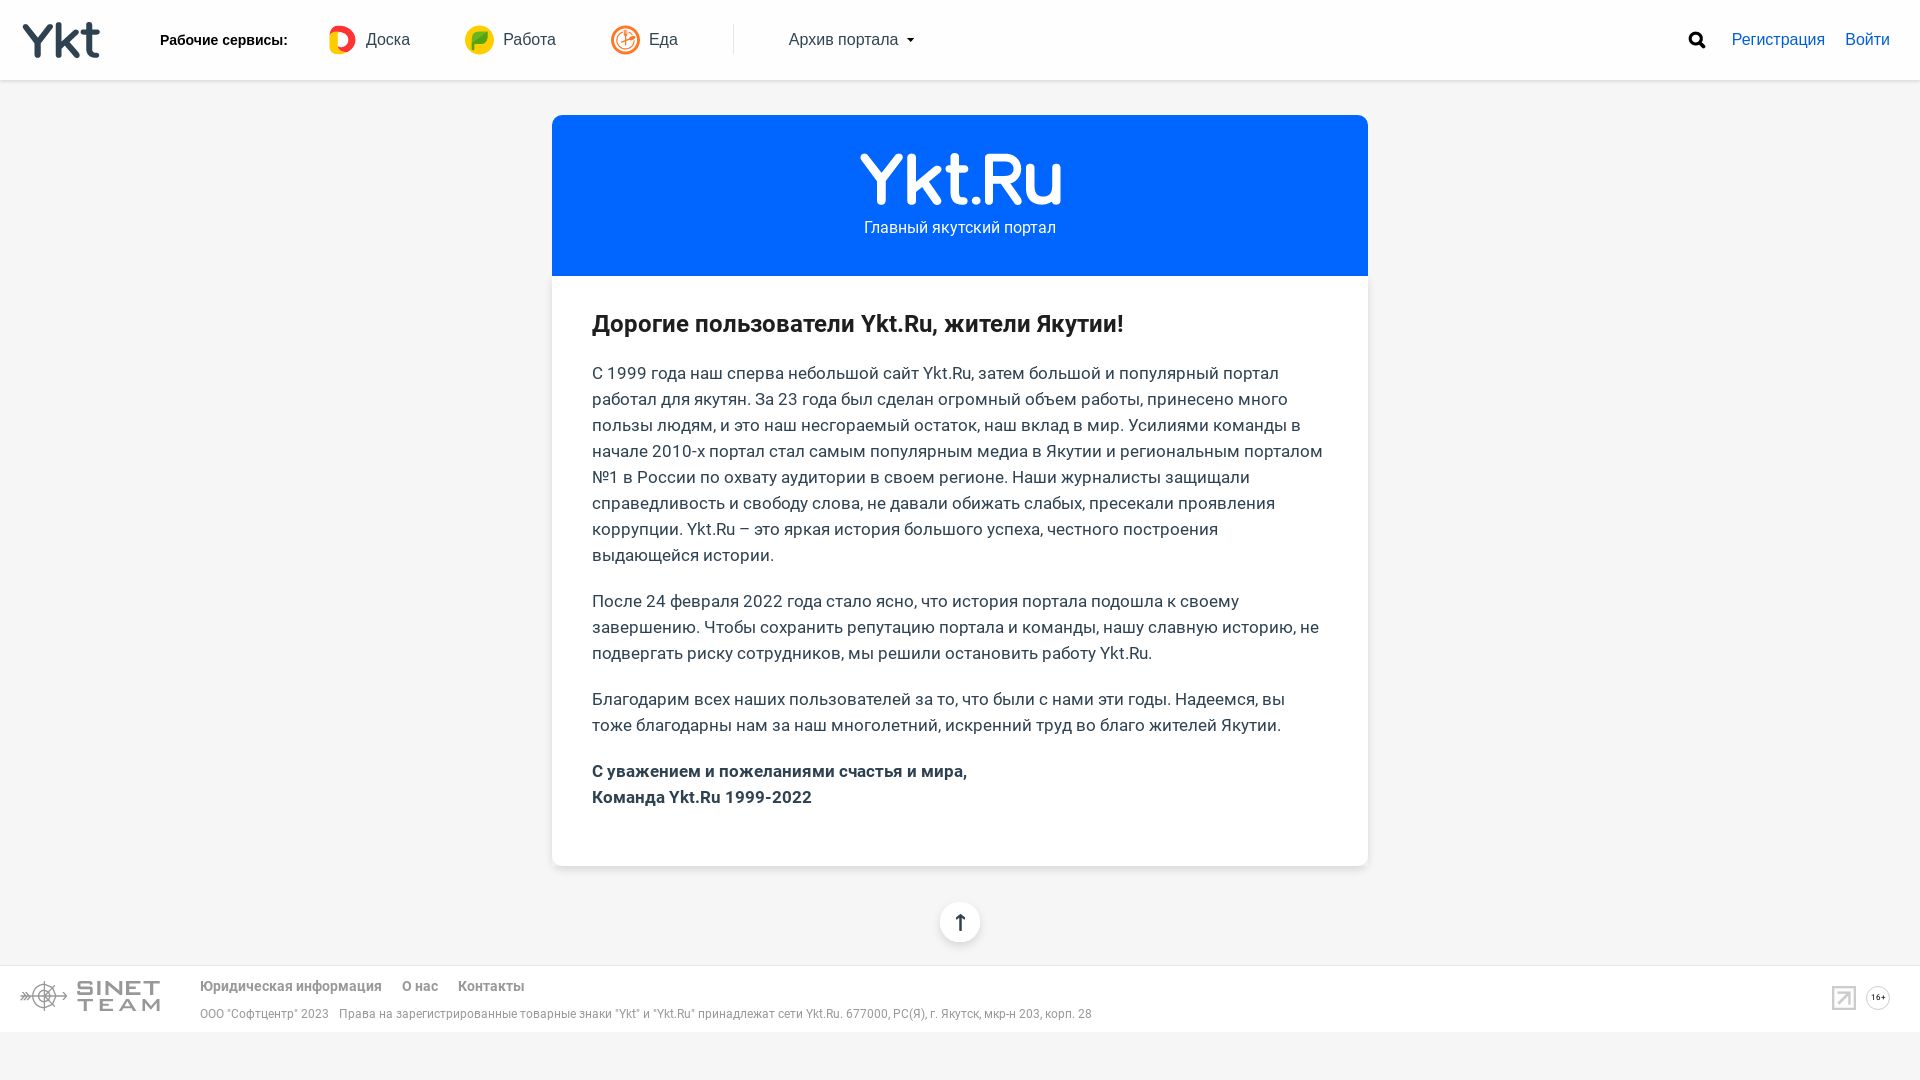 Status do site ykt.ru está   ONLINE